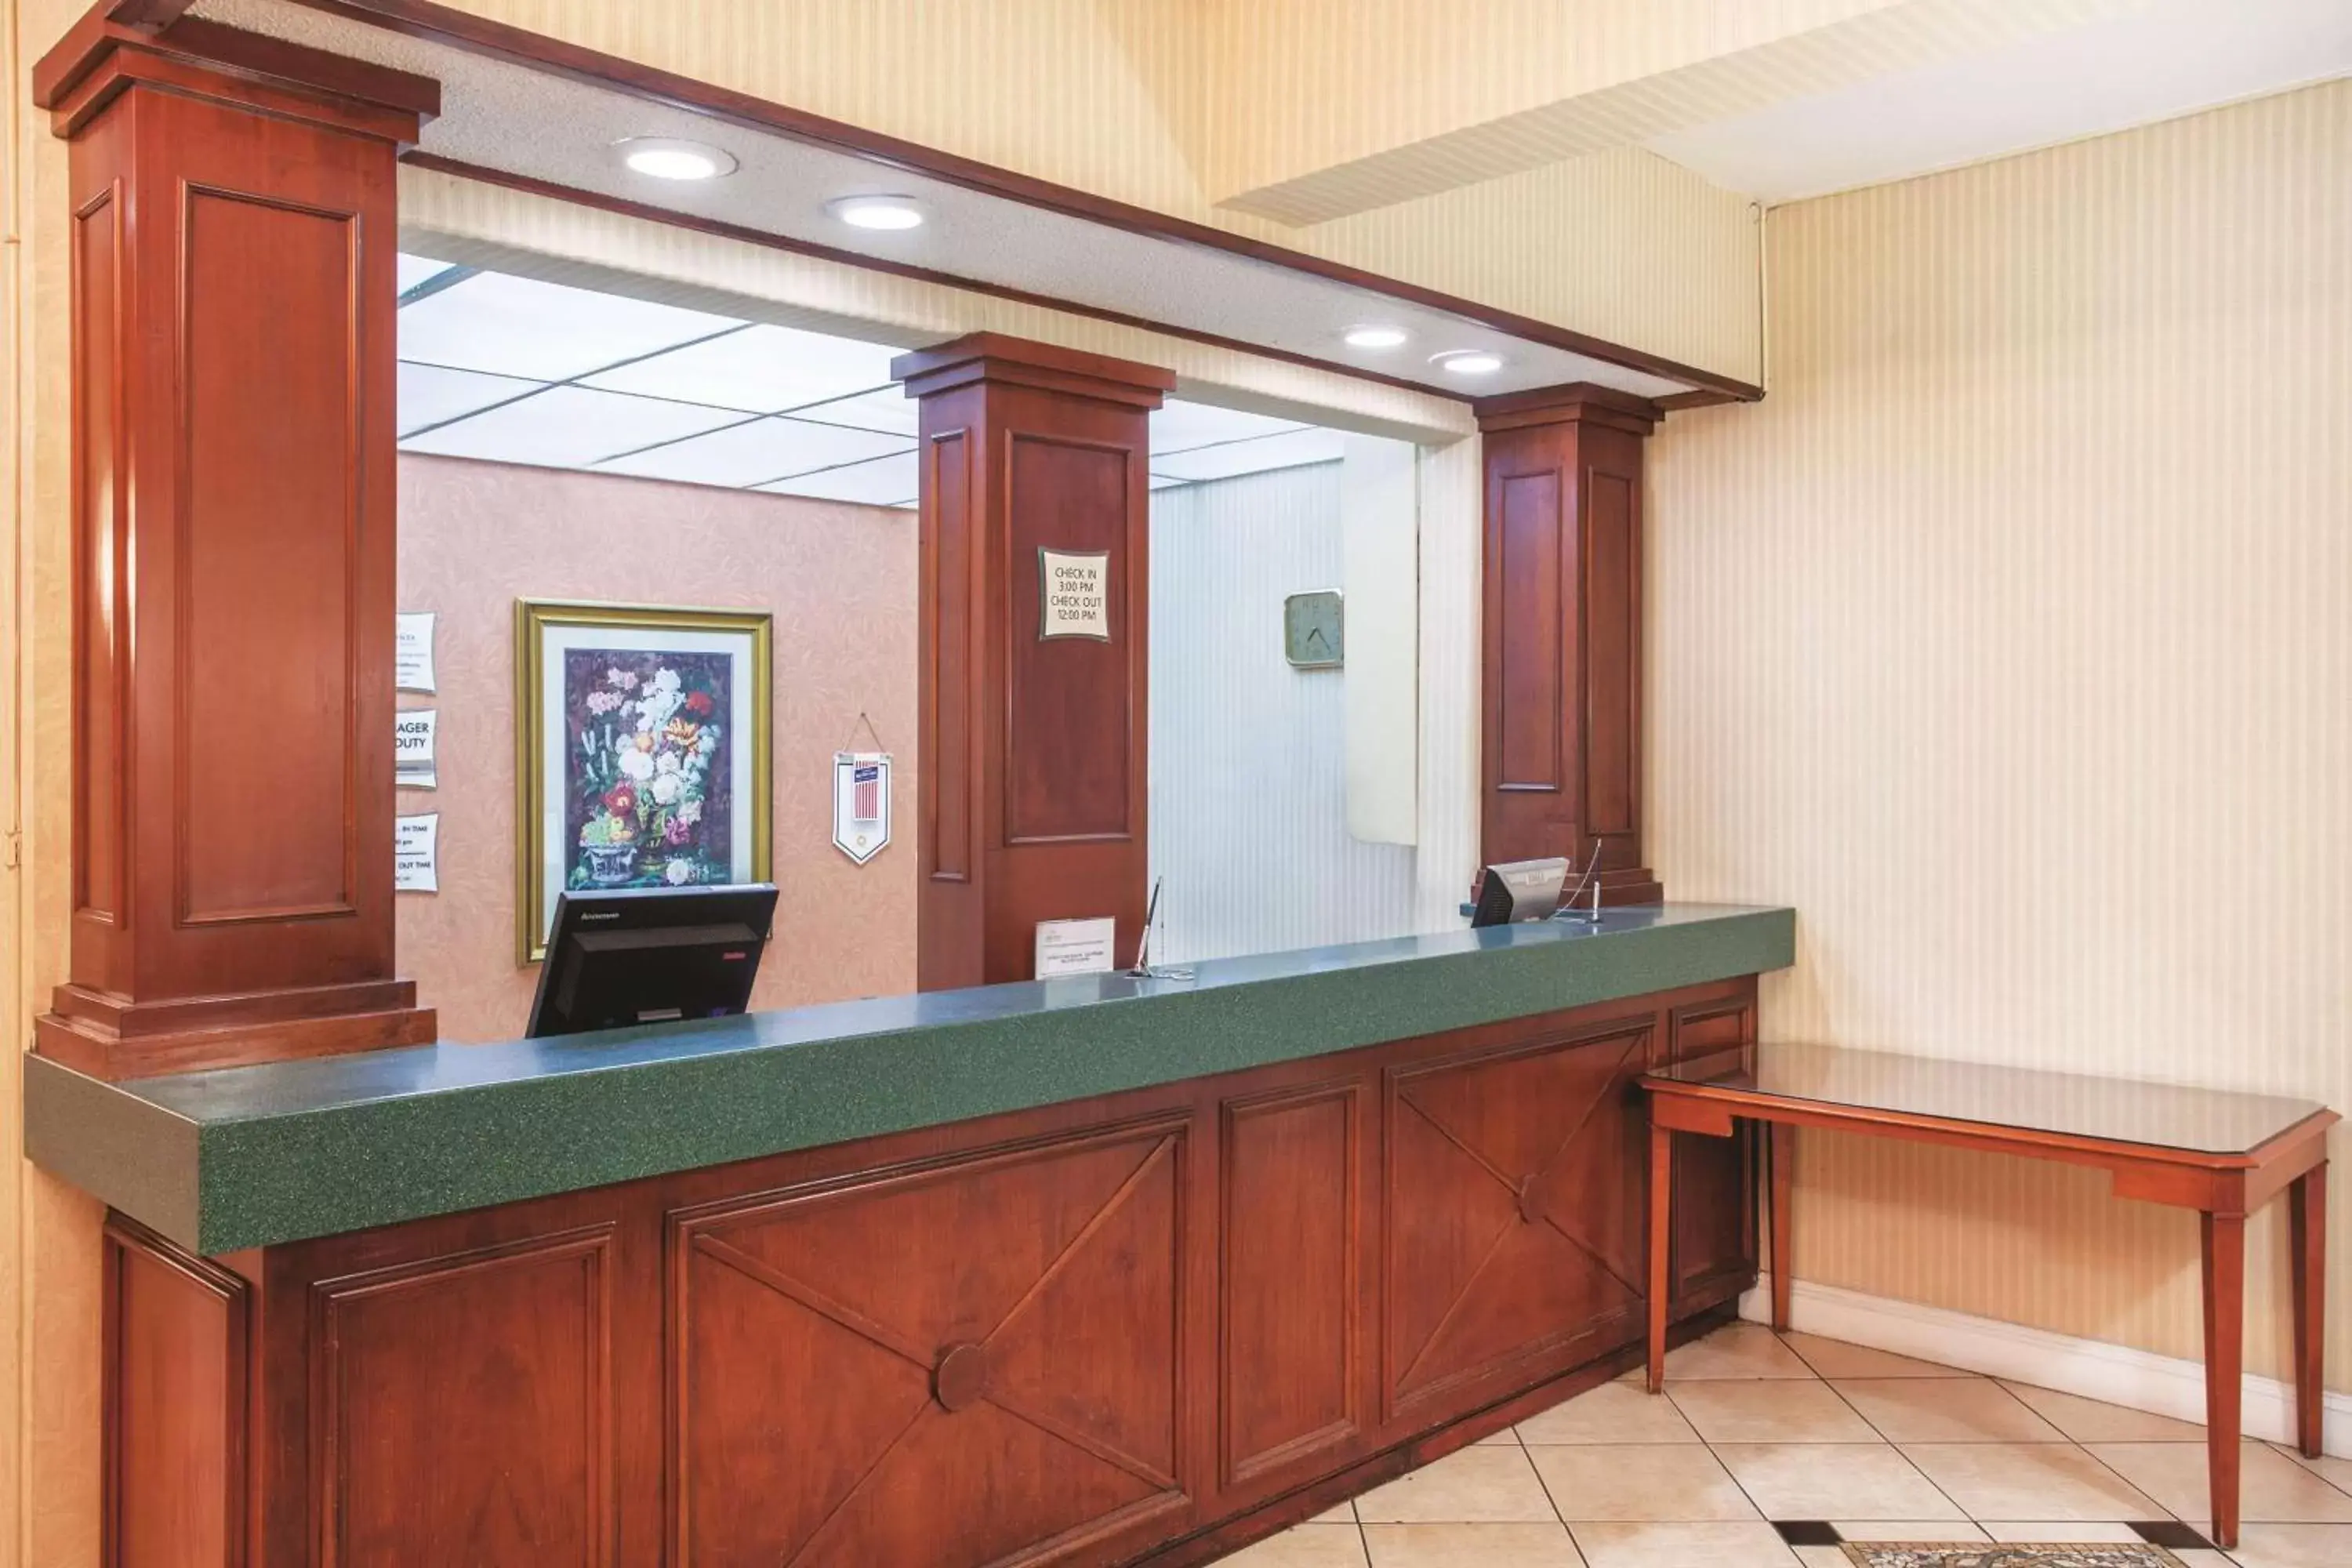 Lobby or reception, Lobby/Reception in La Quinta Inn by Wyndham Berkeley